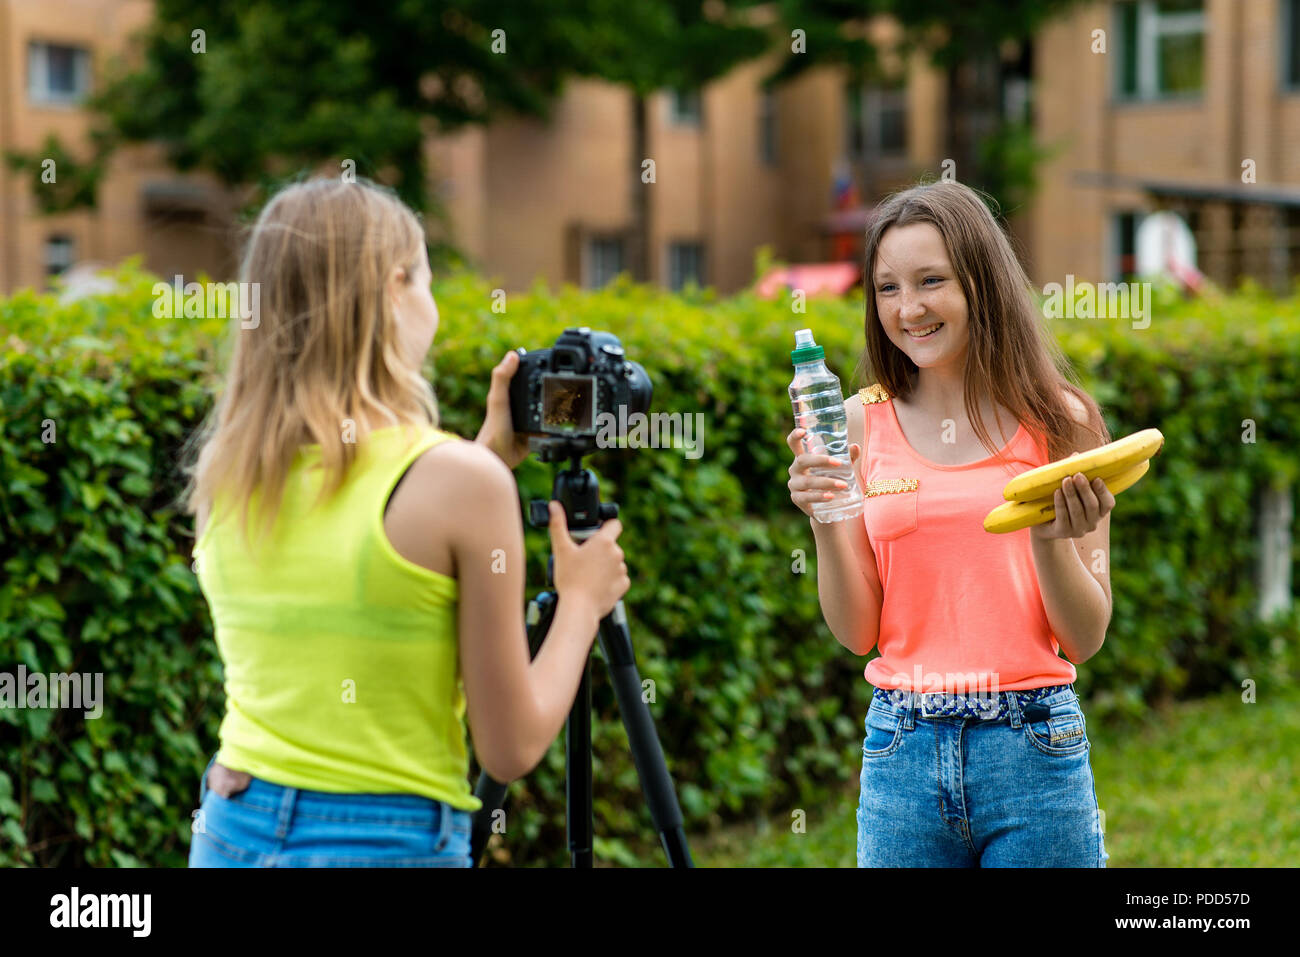 Les filles copines dans l'été dans le parc enregistre la vidéo sur la caméra dans un régime alimentaire sain. Mains tenant une bouteille d'eau banane heureusement et heureusement en souriant. Banque D'Images